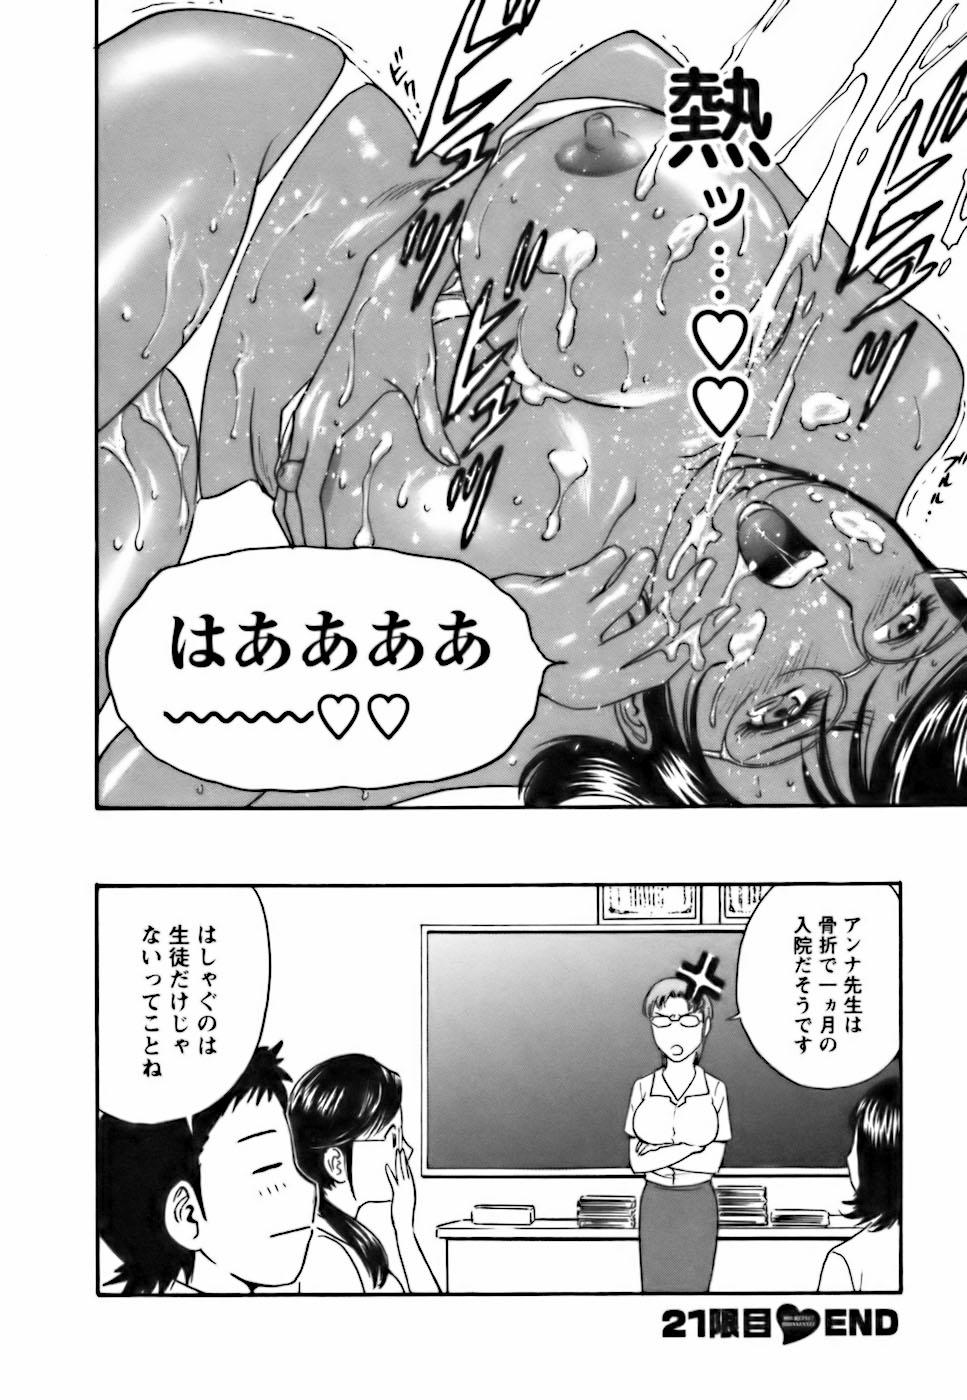 [Hidemaru] Mo-Retsu! Boin Sensei (Boing Boing Teacher) Vol.3 67